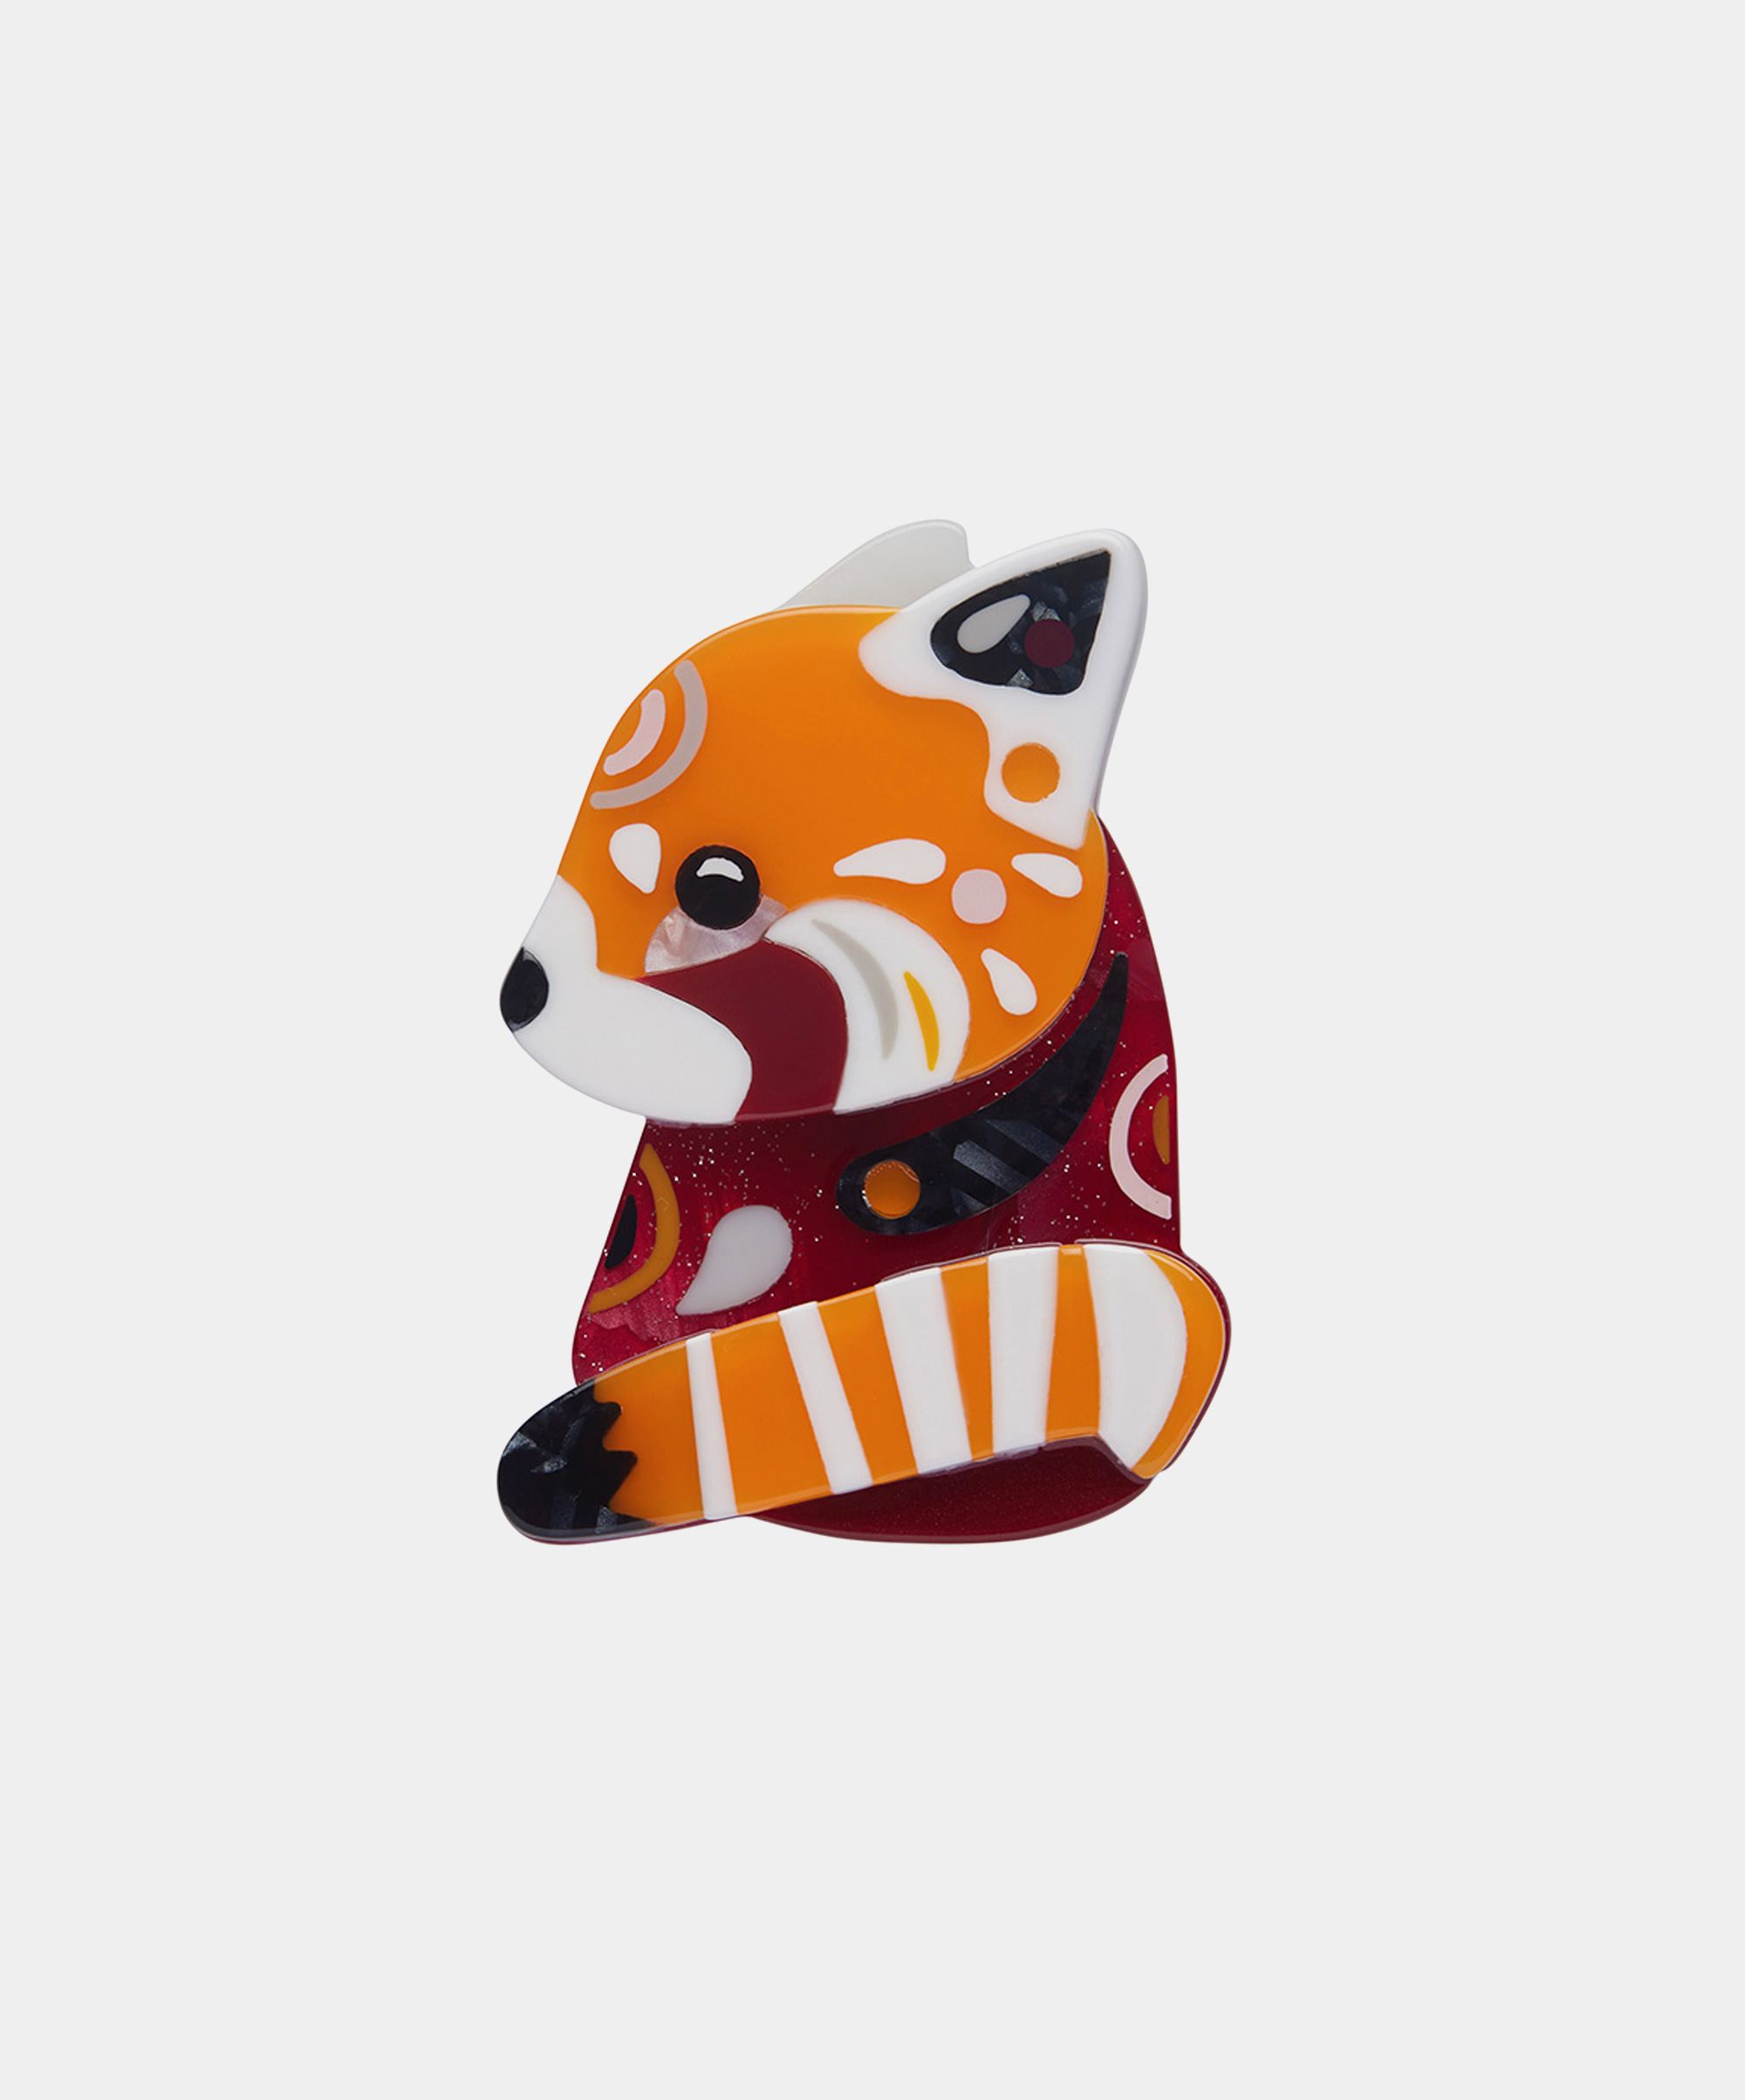 The Rakish Red Panda Brooch - Pete Cromer